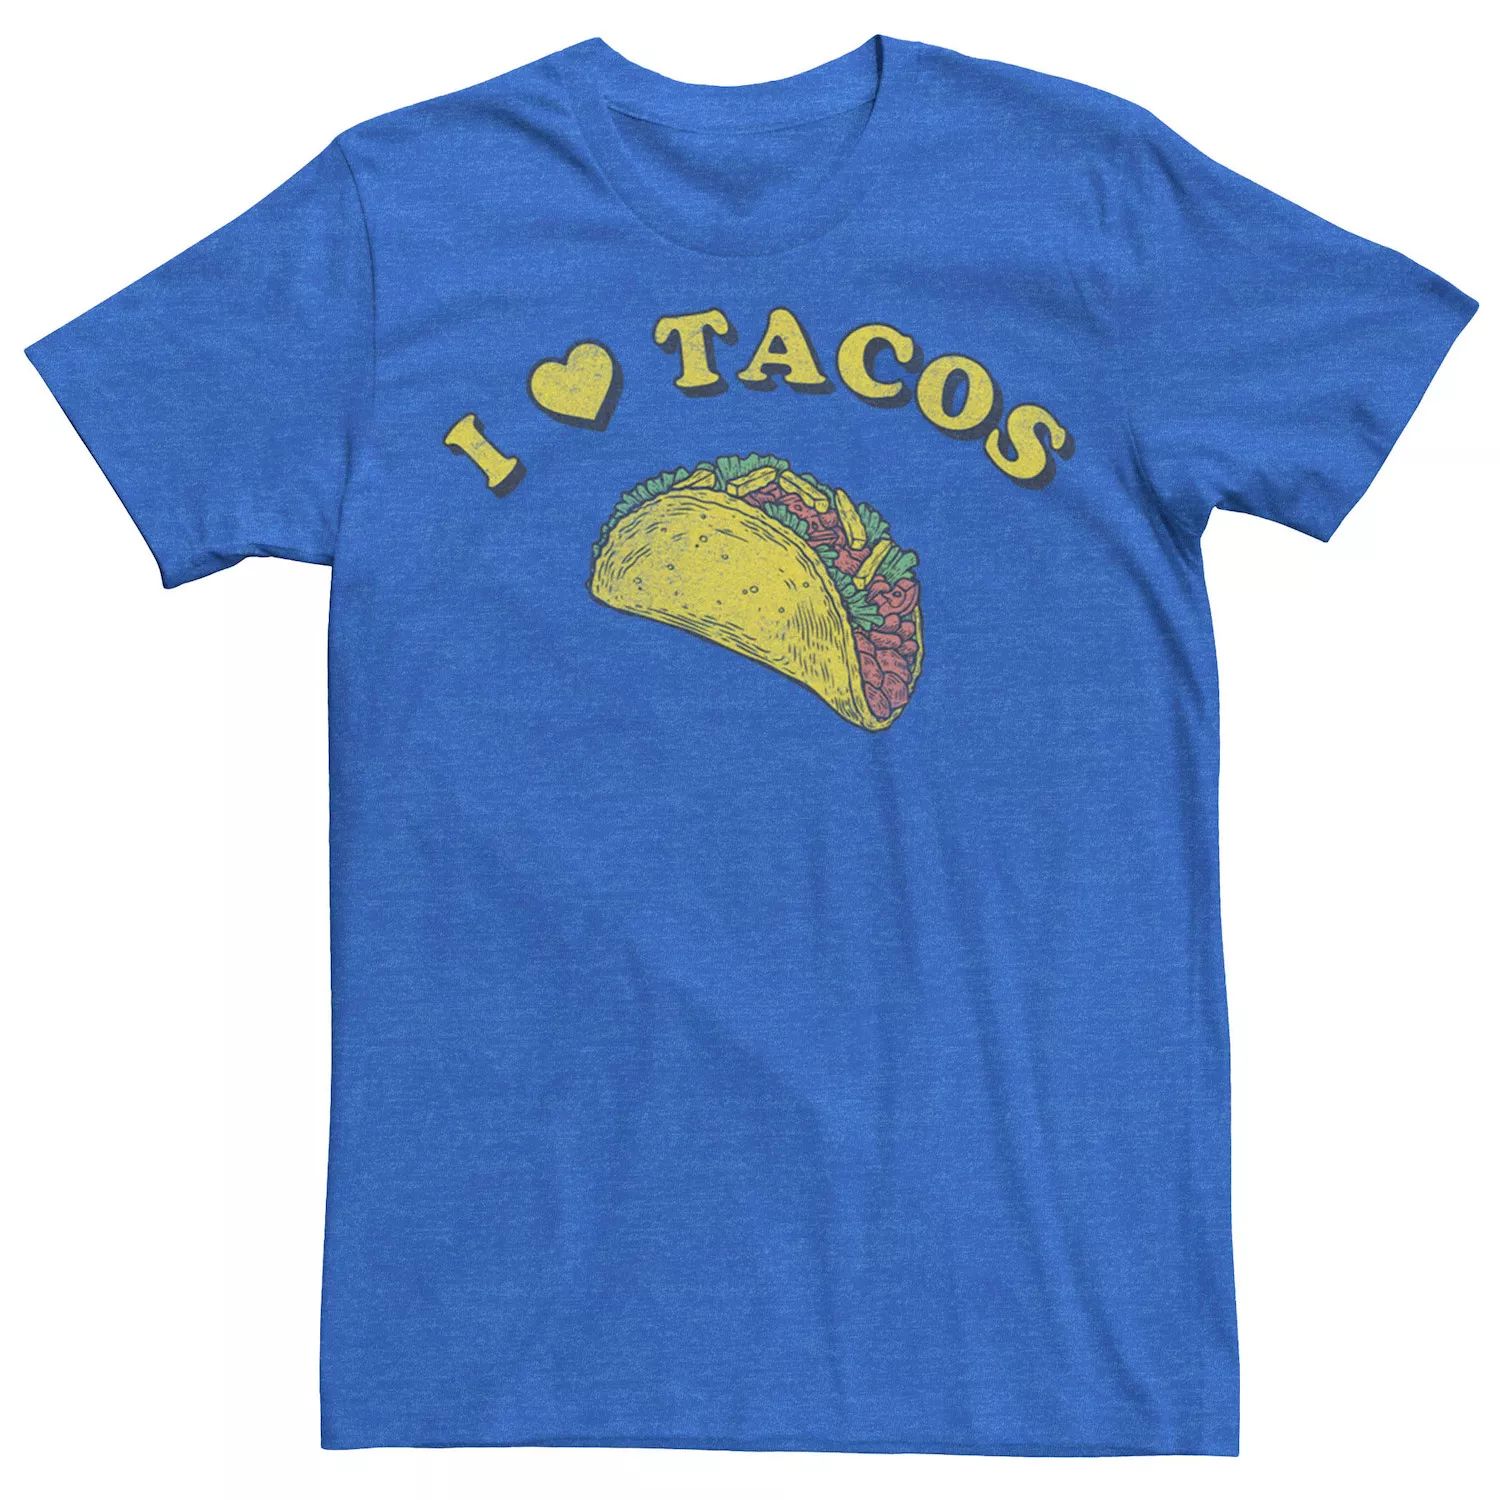 Мужская футболка I Love Tacos Licensed Character мужская футболка mi tacos es mi tacos хизер блэк красный флаг